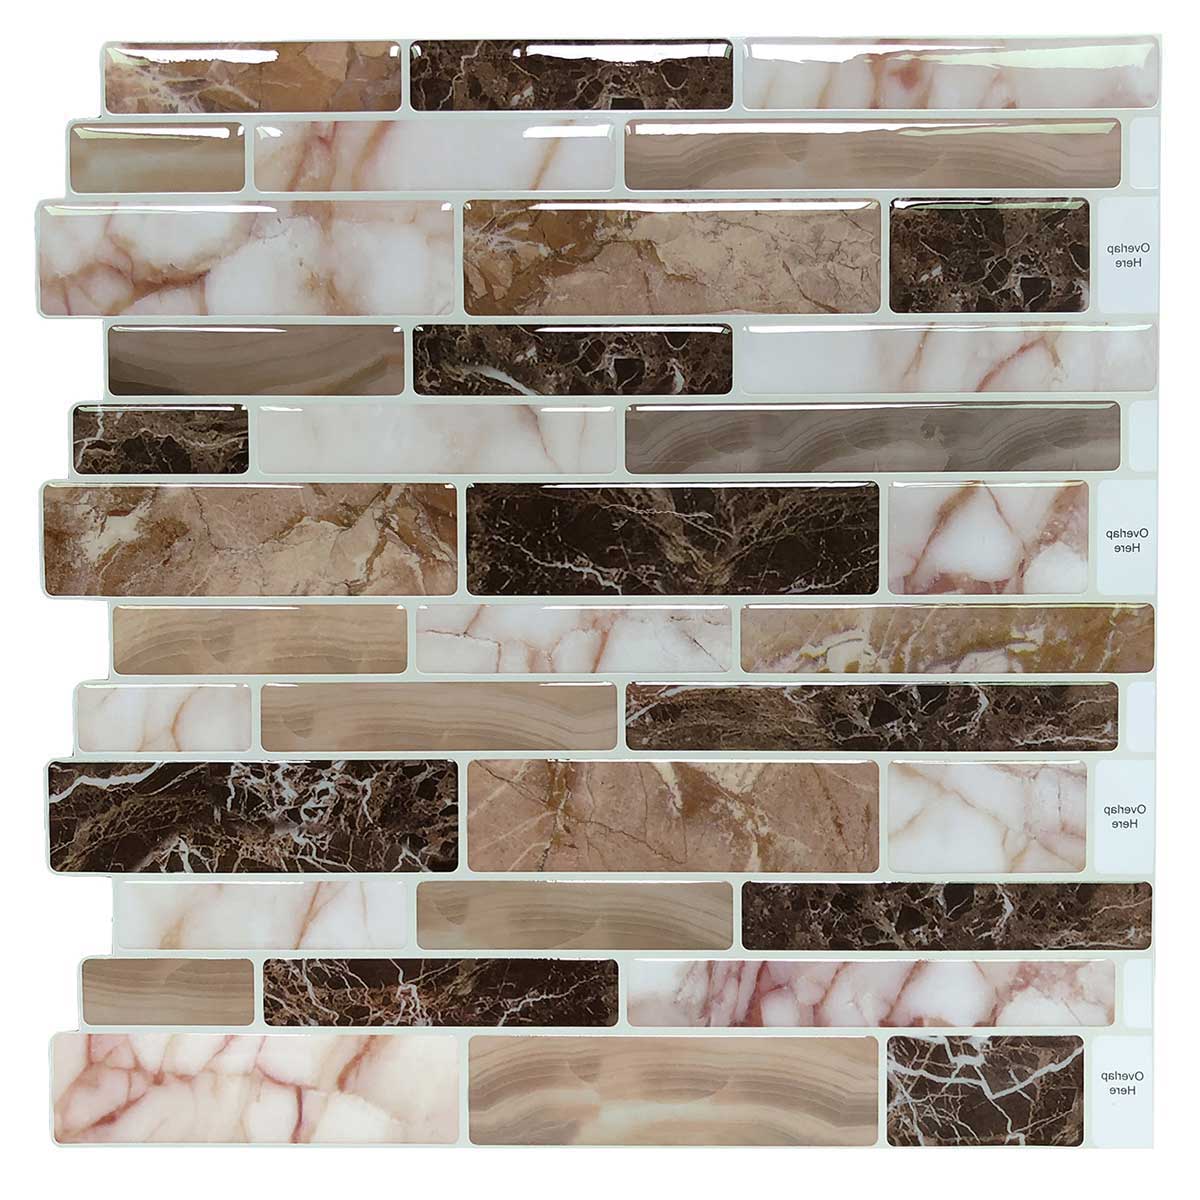 Art3d 10-Sheet Peel and Stick Tile Backsplash for Kitchen in Marble Design Tile